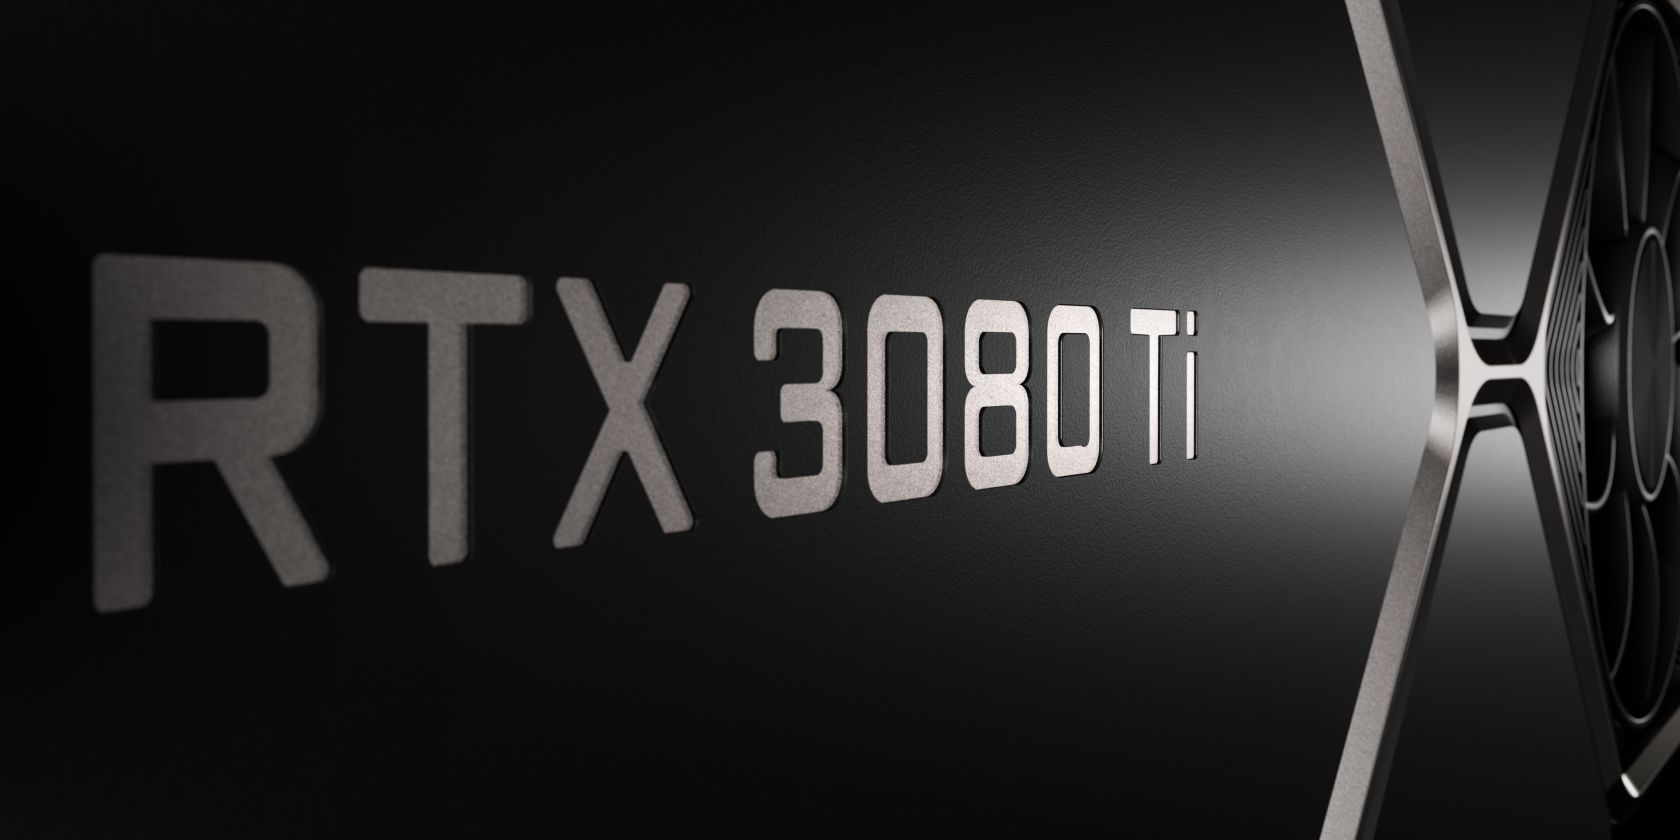 NVIDIA RTX 3080 Ti Founders Edition GPU